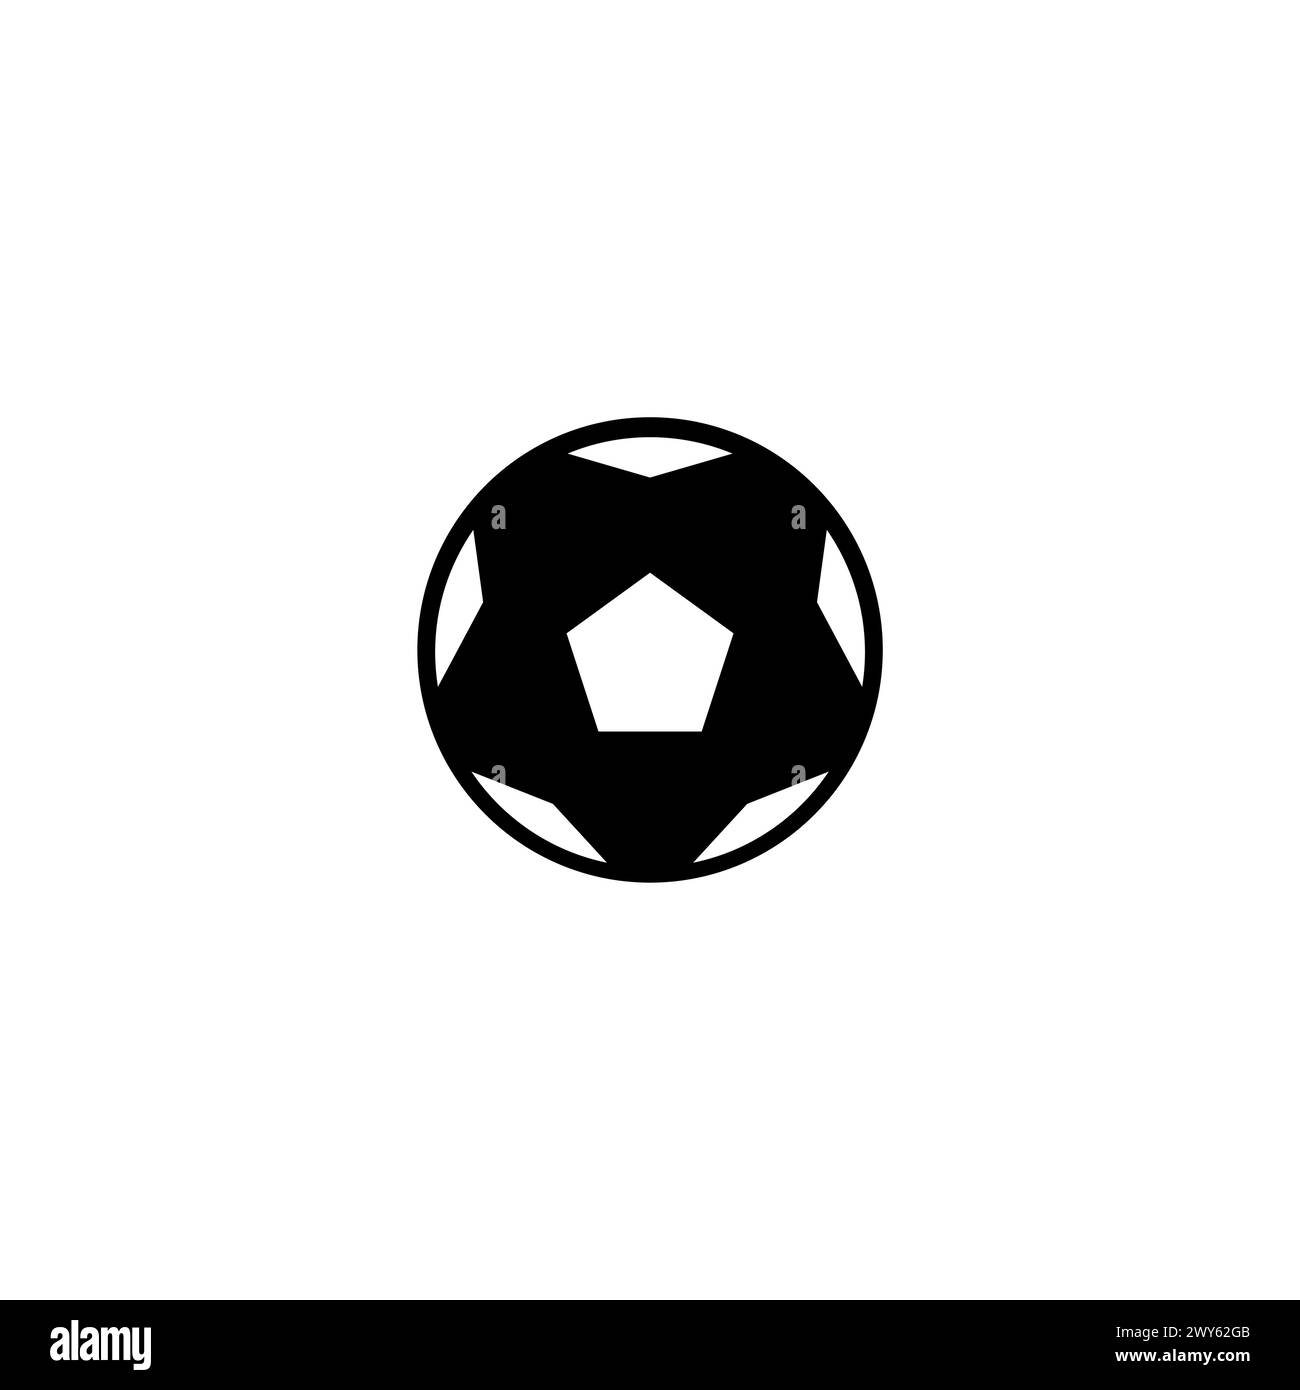 Football Simple Ball Icon. Ball Soccer Icon Stock Vector